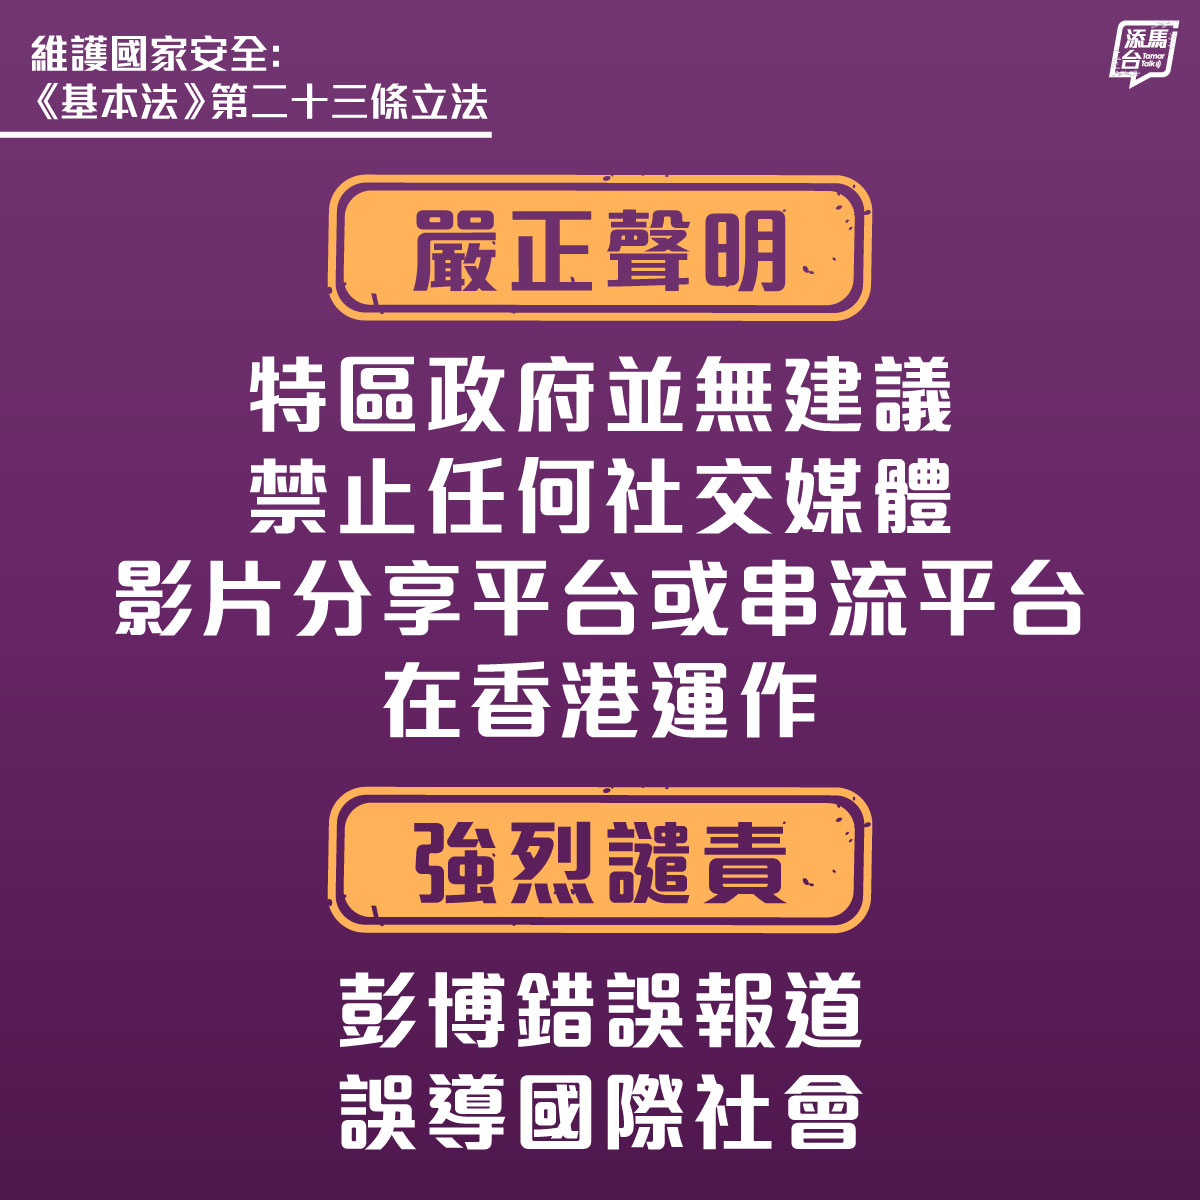 【強烈不滿和譴責彭博錯誤報道】特區政府嚴正聲明，並無建議禁止任何社交媒體、影片分享平台或串流平台在香港運作。